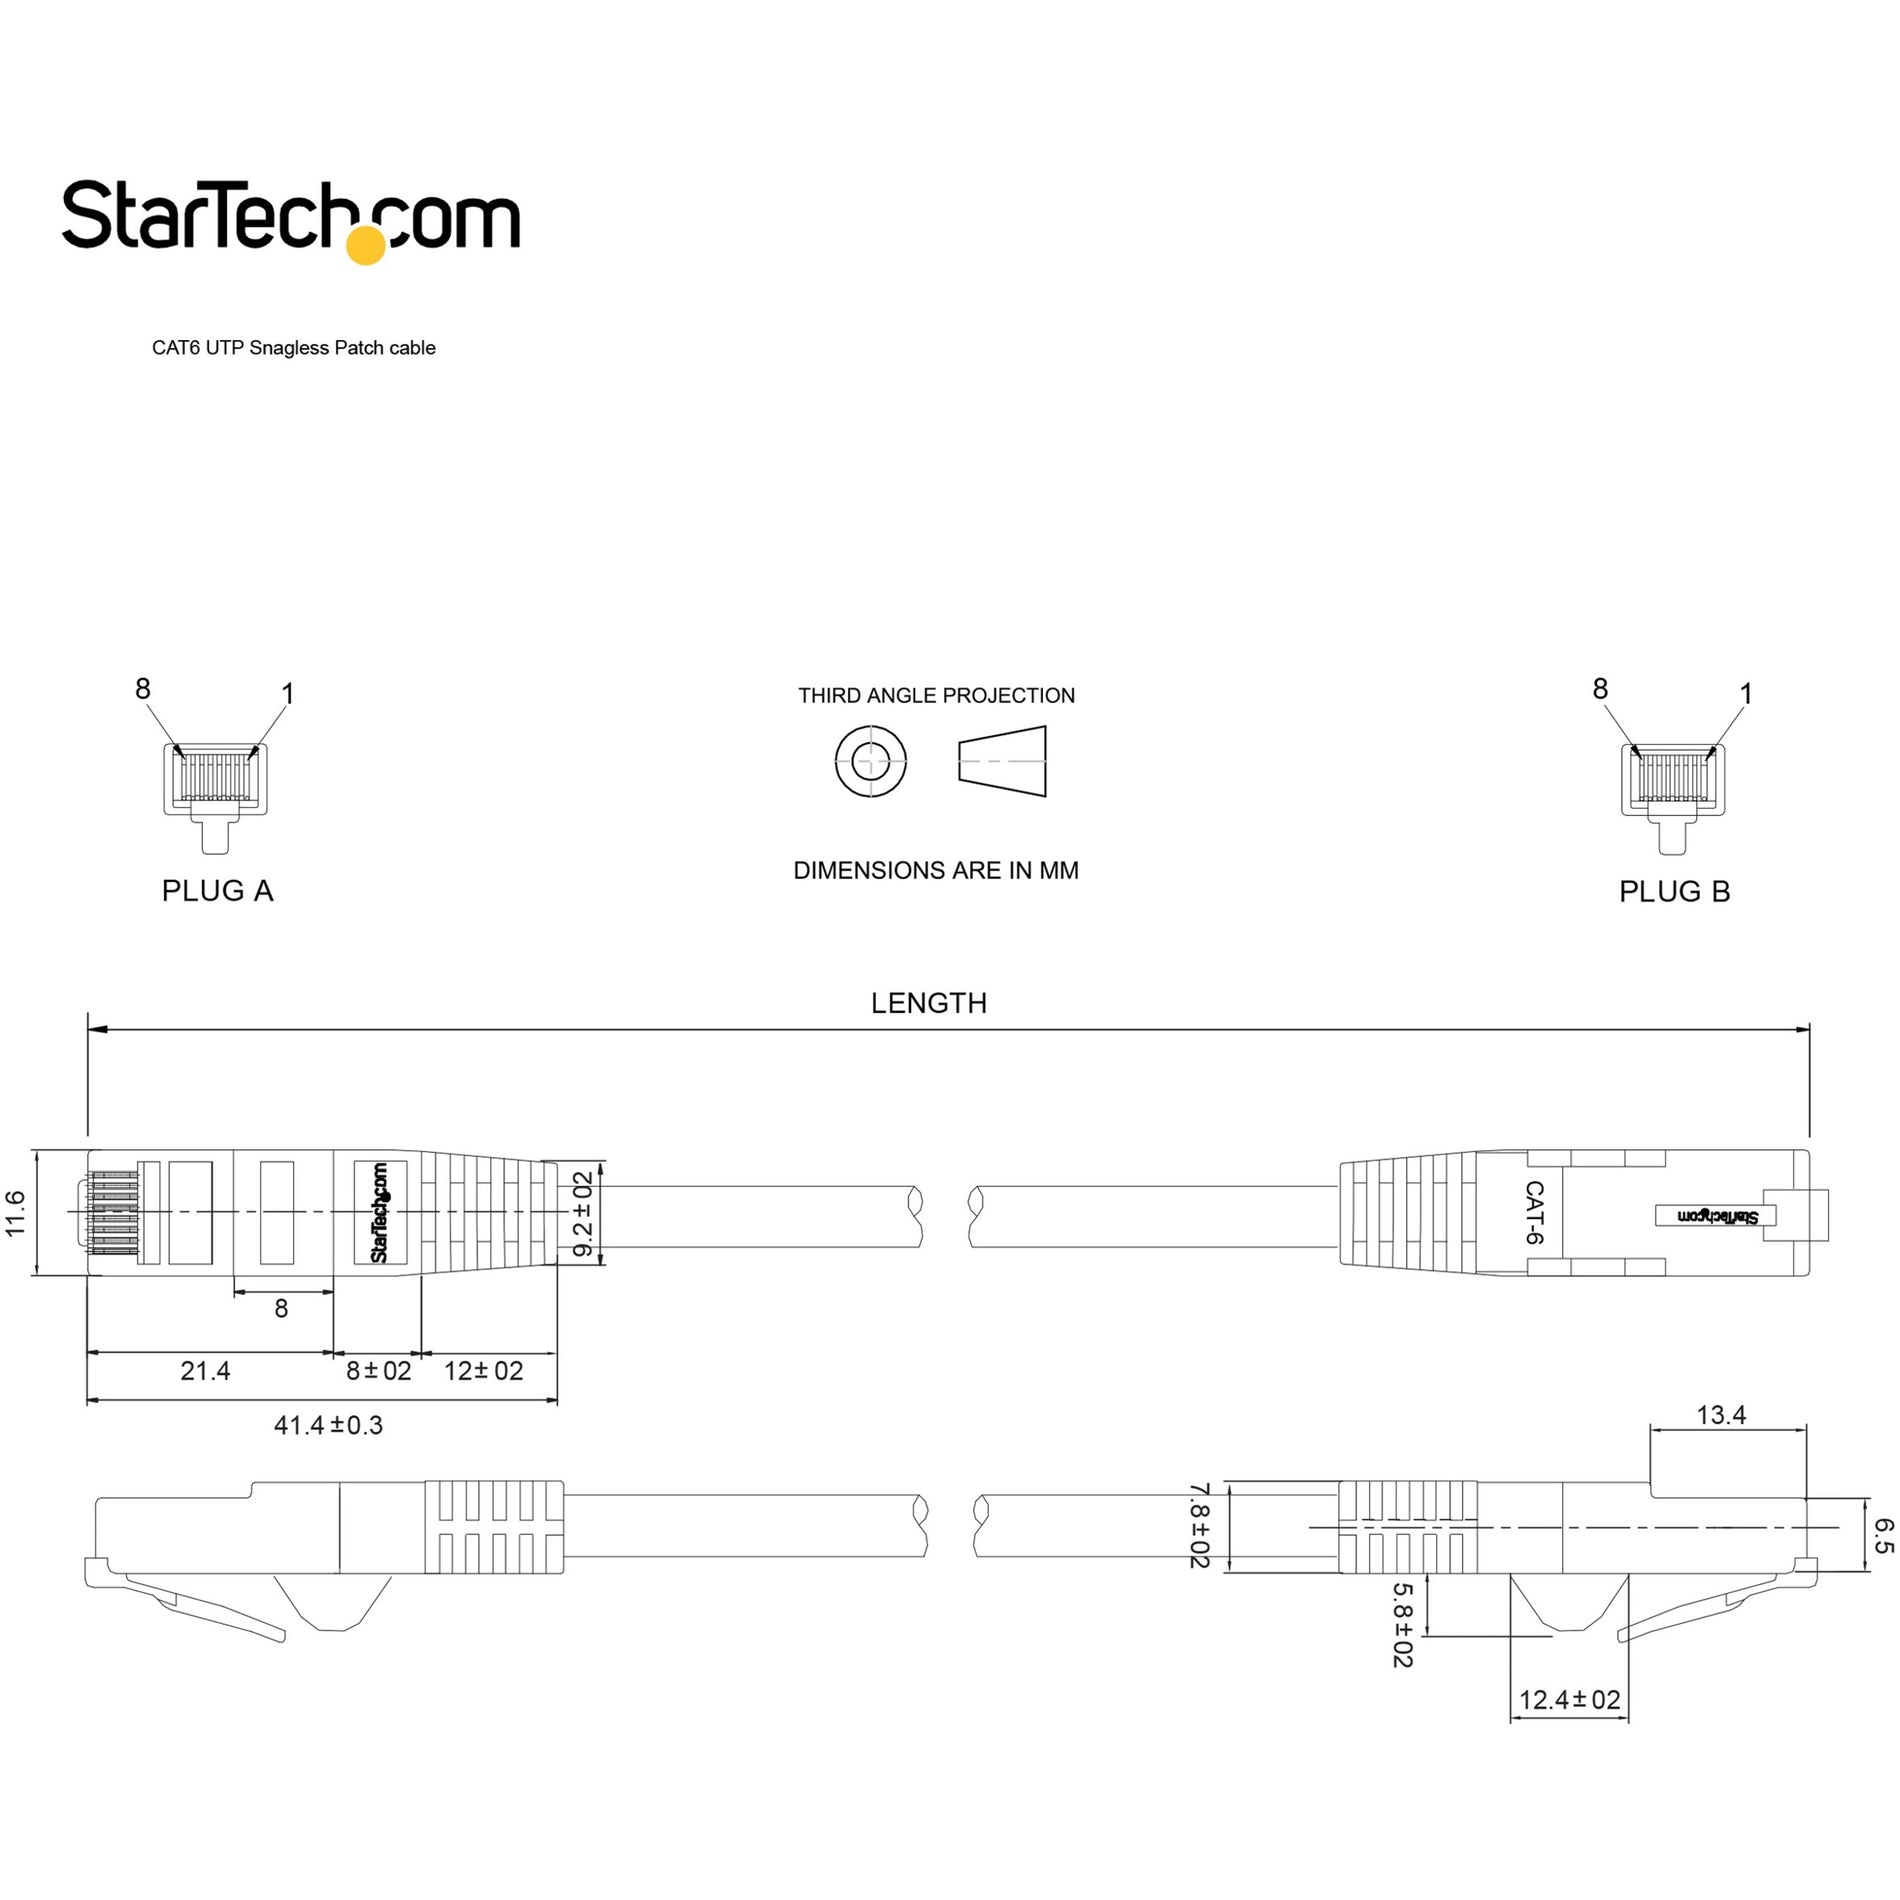 StarTech.com N6PATCH7BL Cat. 6 Patch Cable, 7 ft Black Snag-less, ETL Verified